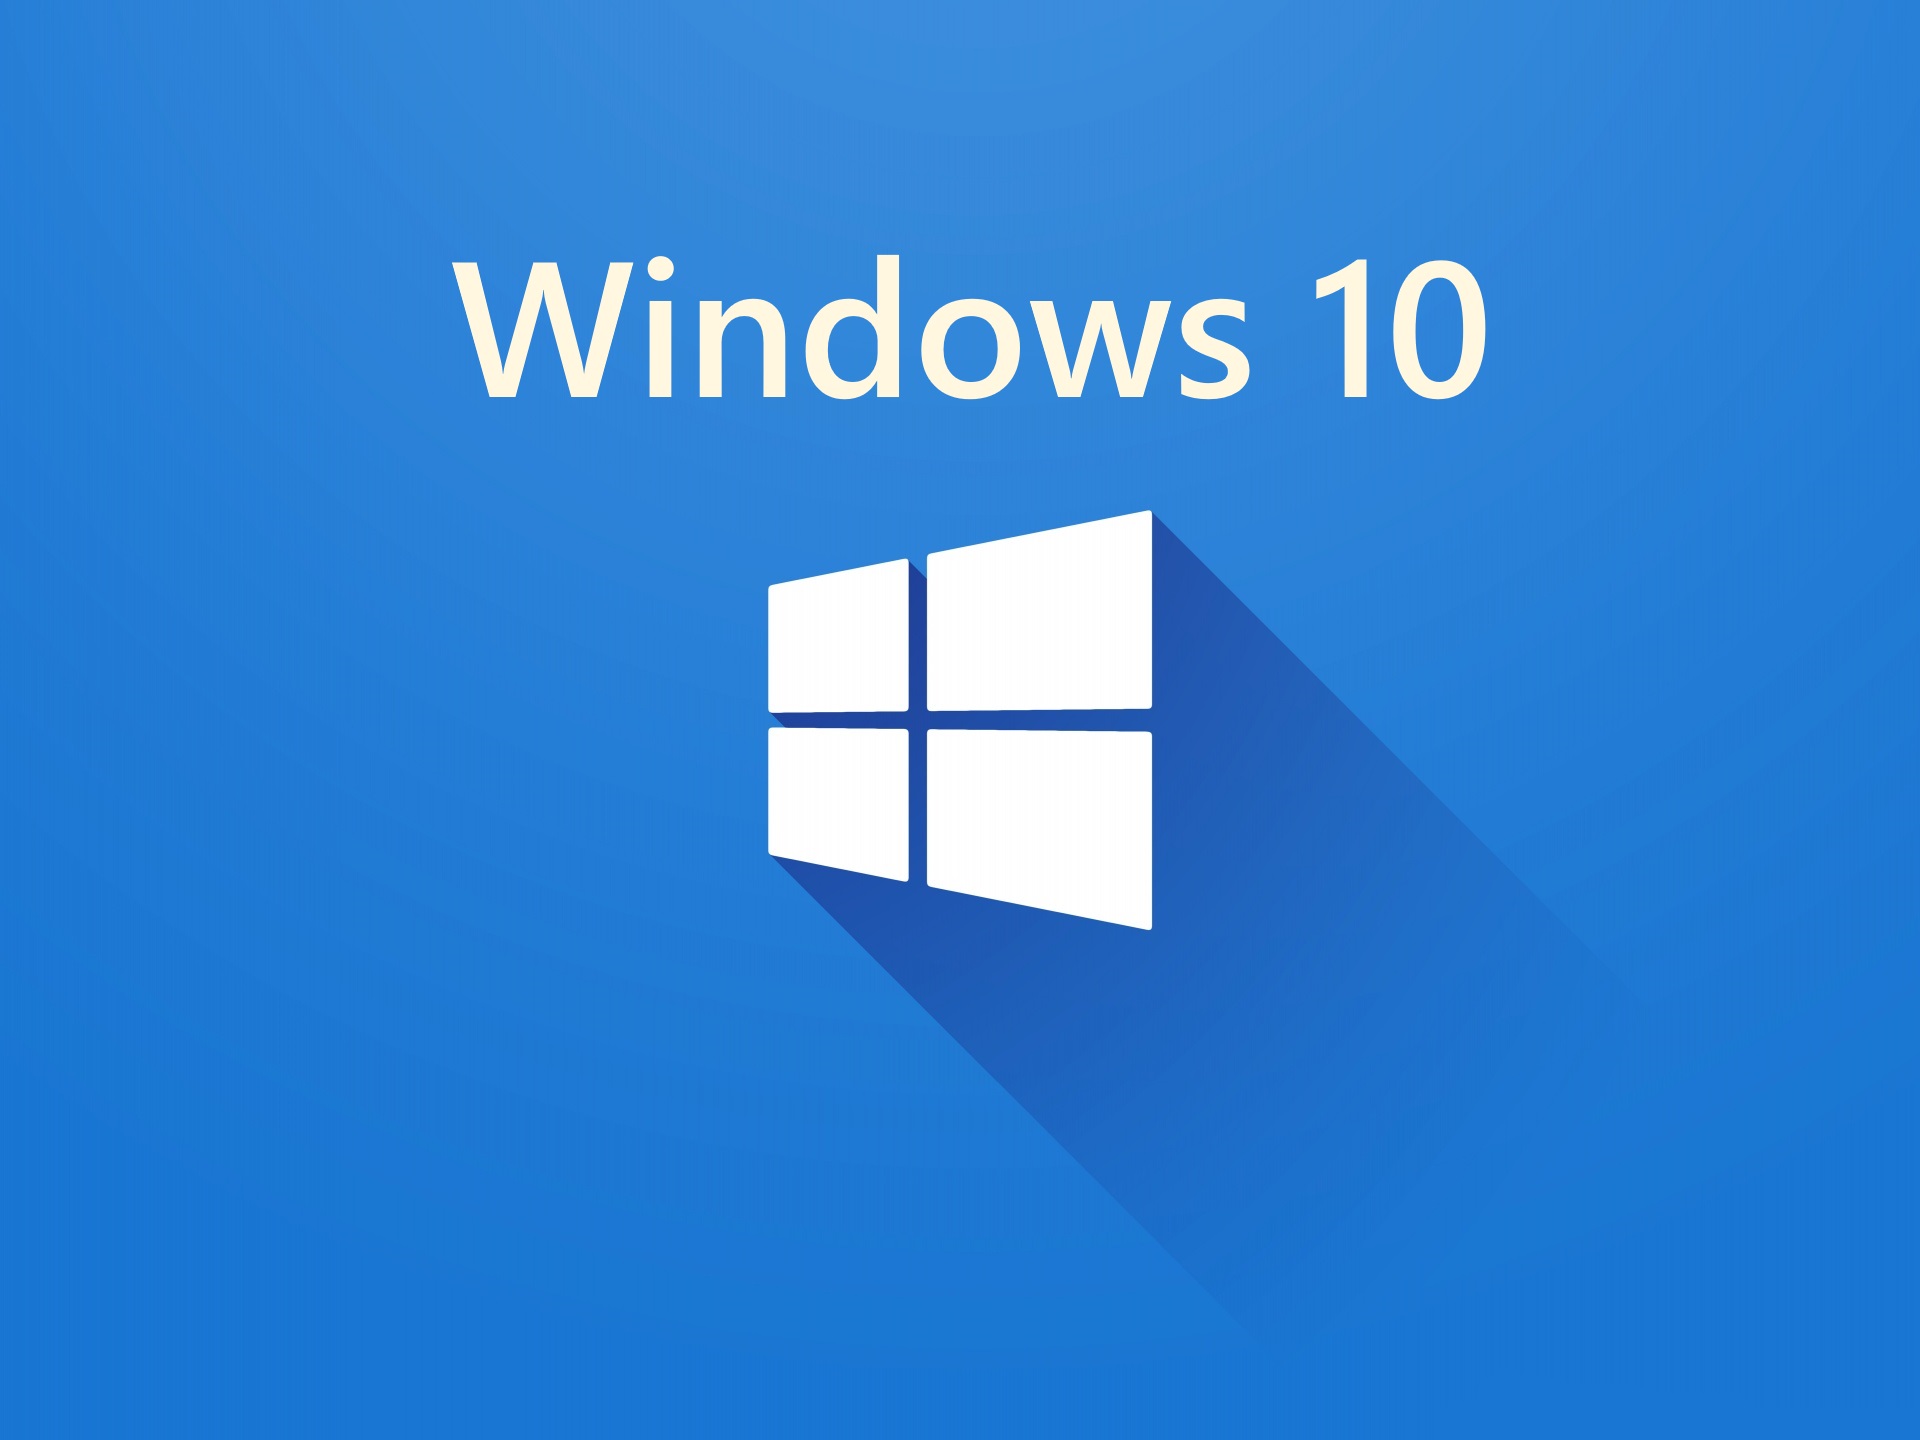 Riattivare Windows 10 dopo aver cambiato scheda madre o altro hardware